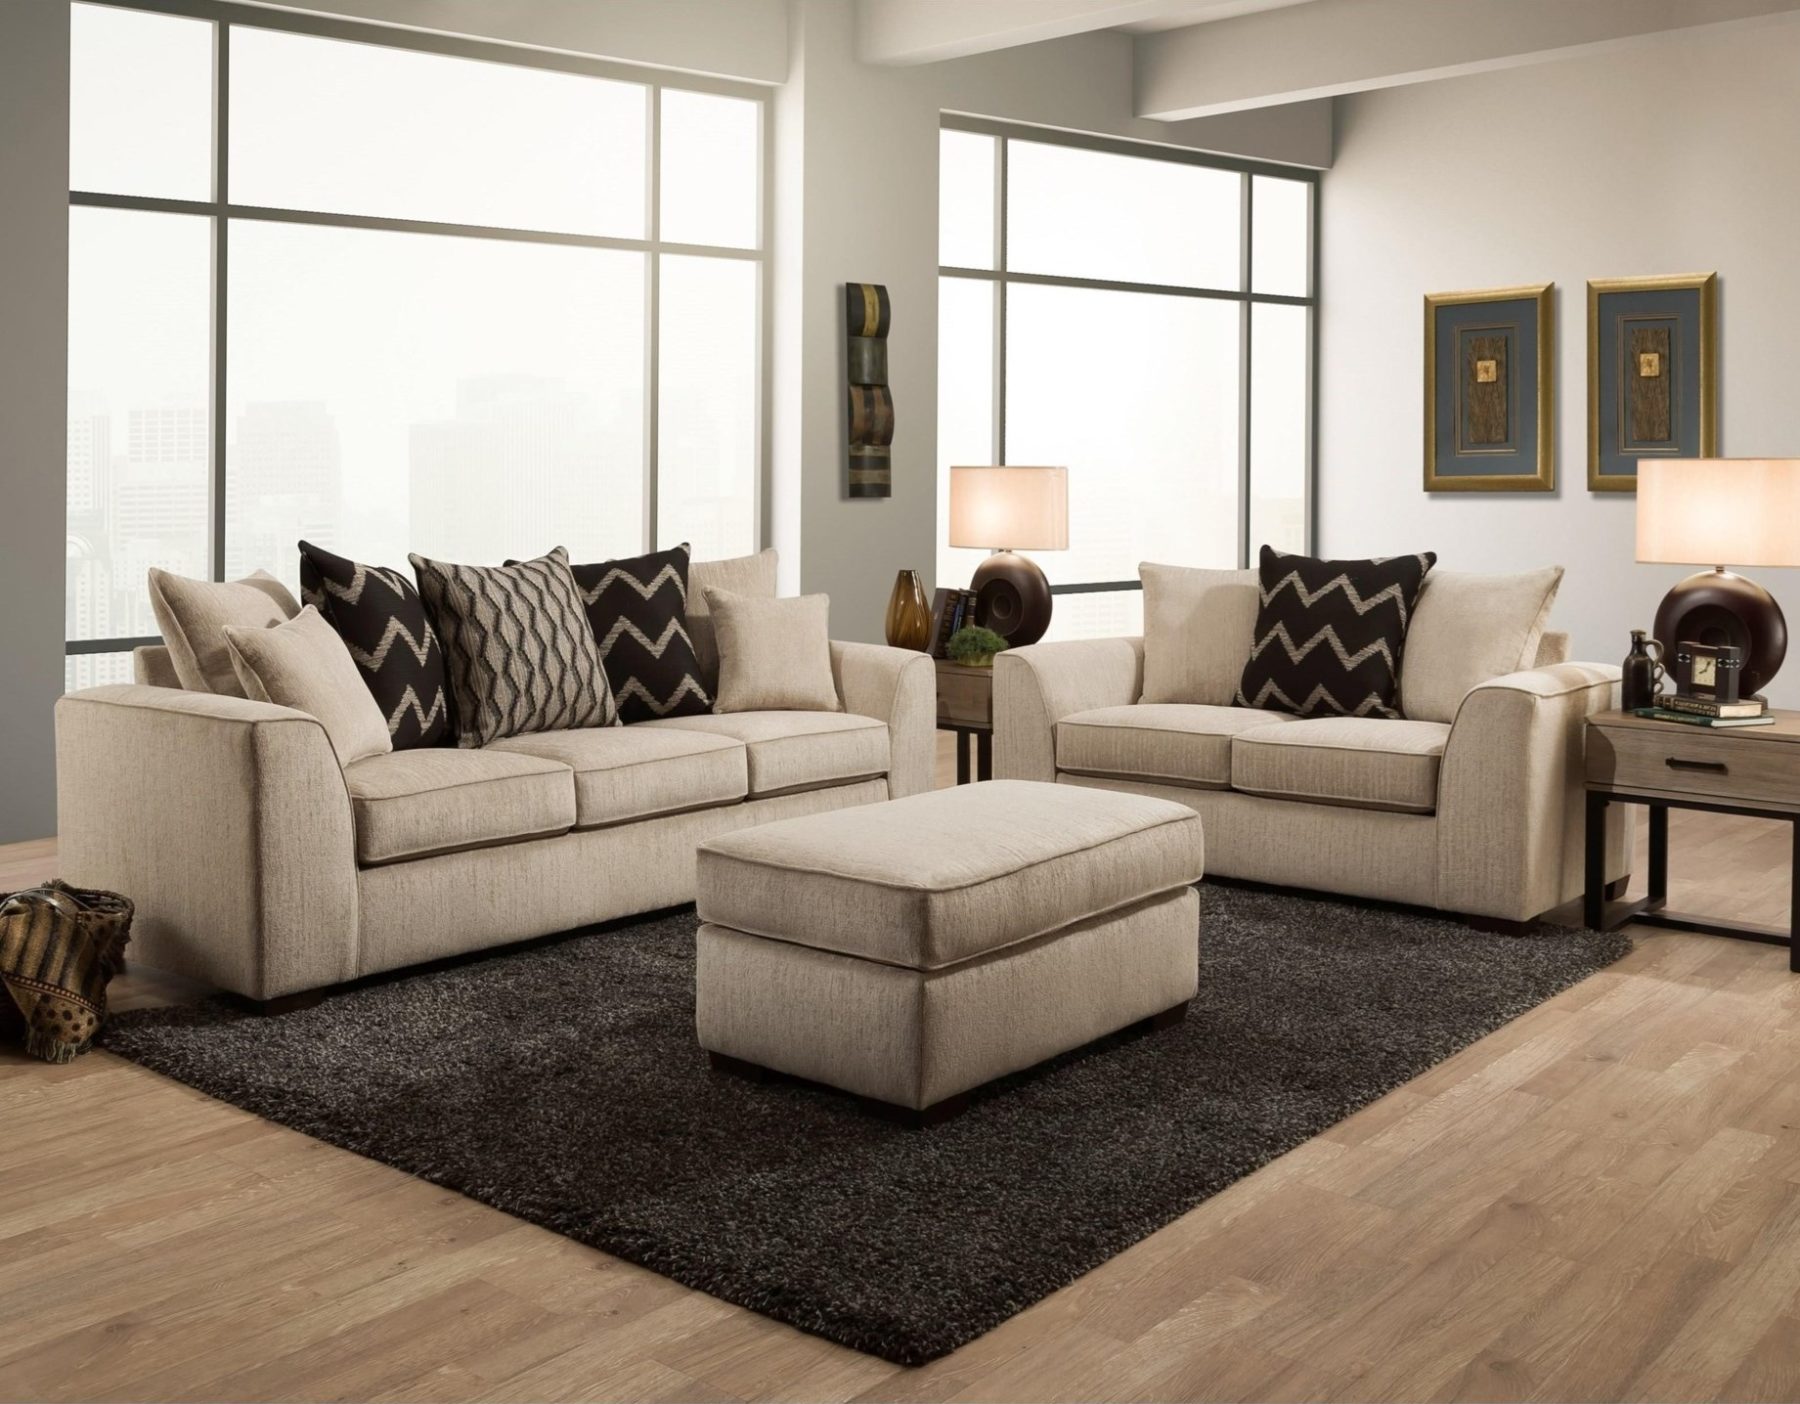 2600 2 Piece Living Room Sofa